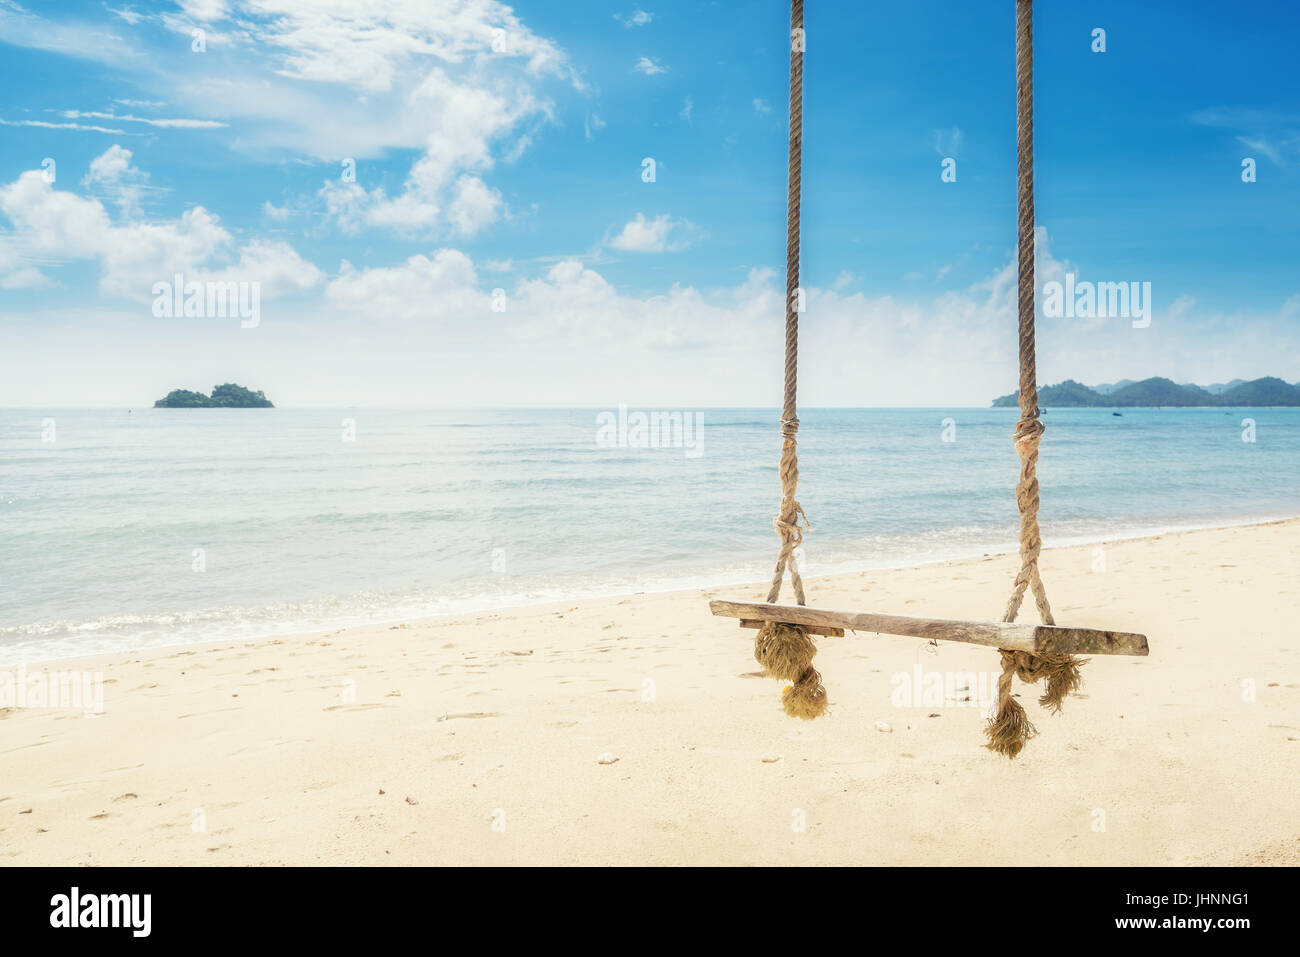 Balançoire en bois accroché sur la plage près de l'arbre à l'île de Phuket, Thaïlande. Vacances d'été Vacances et concept. Banque D'Images